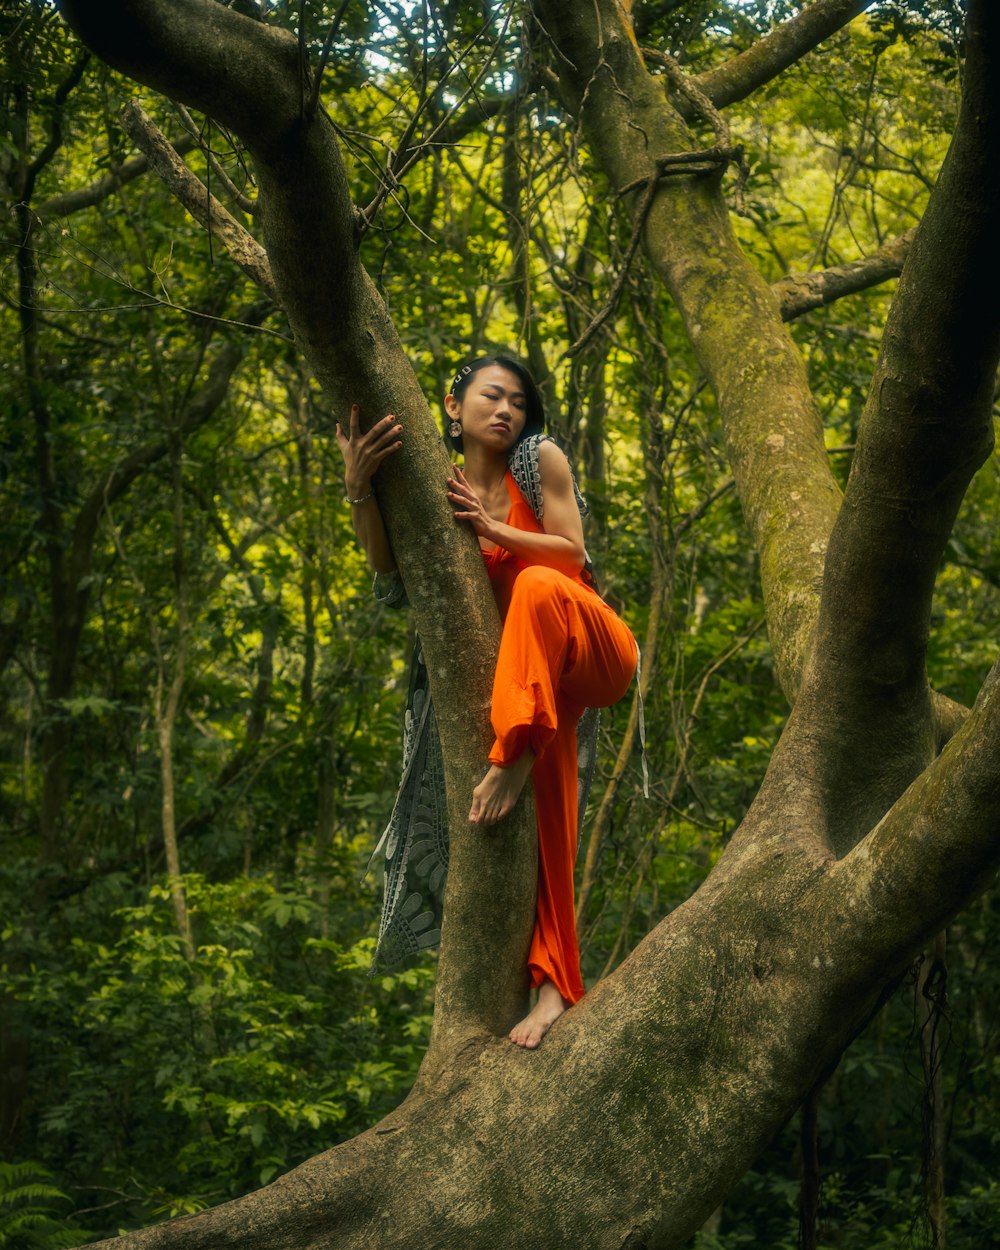 Una mujer con un vestido naranja trepando a un árbol